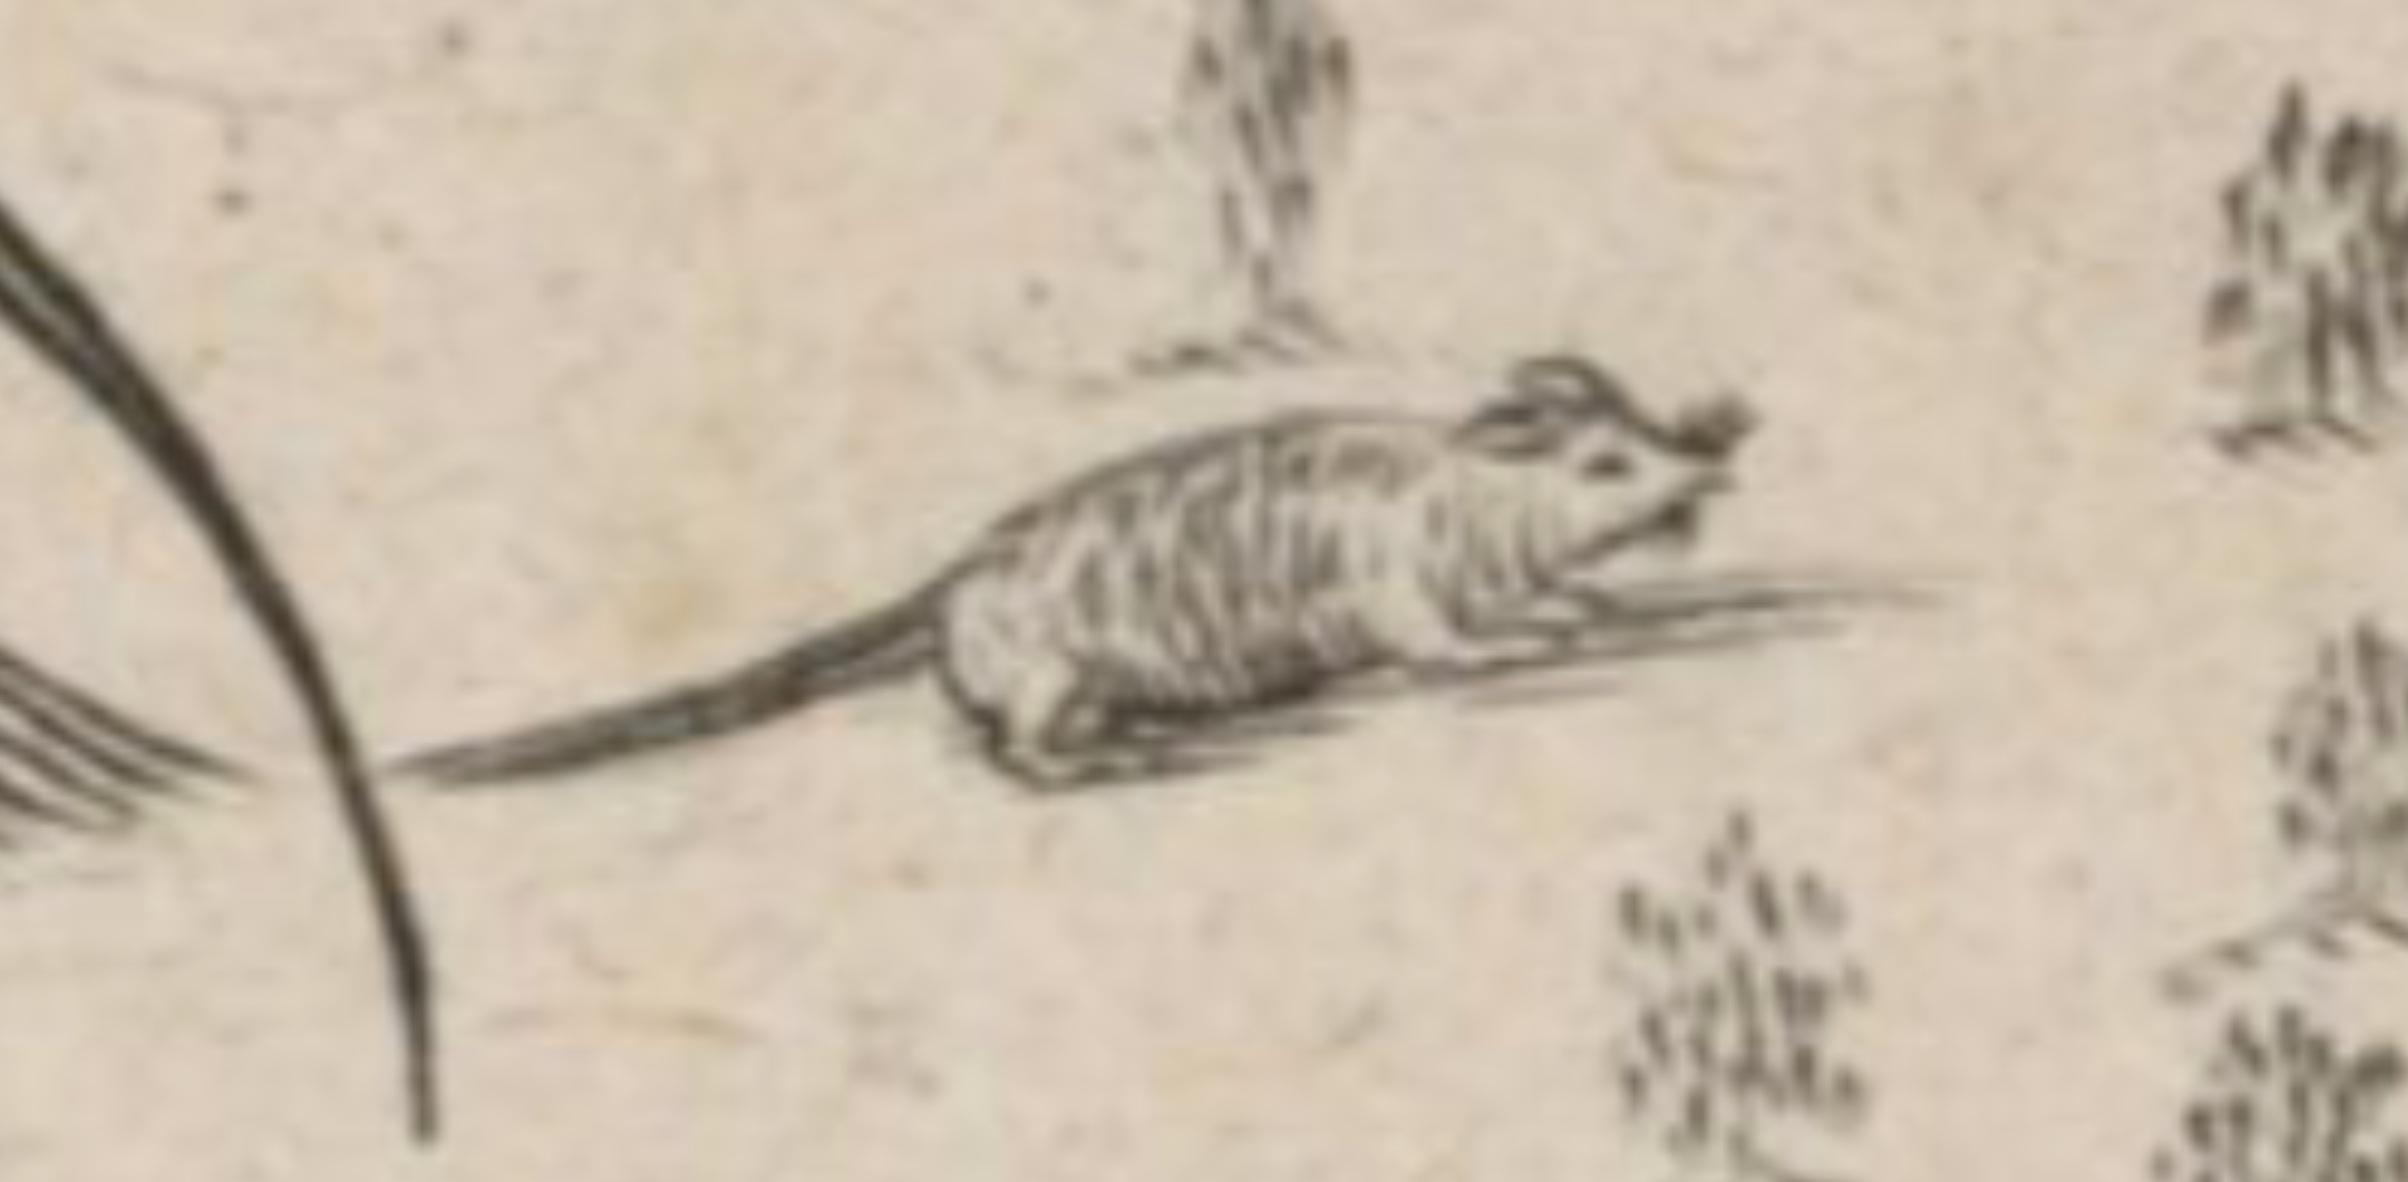 Détail de carte dessinée par Samuel de Champlain montrant une souris